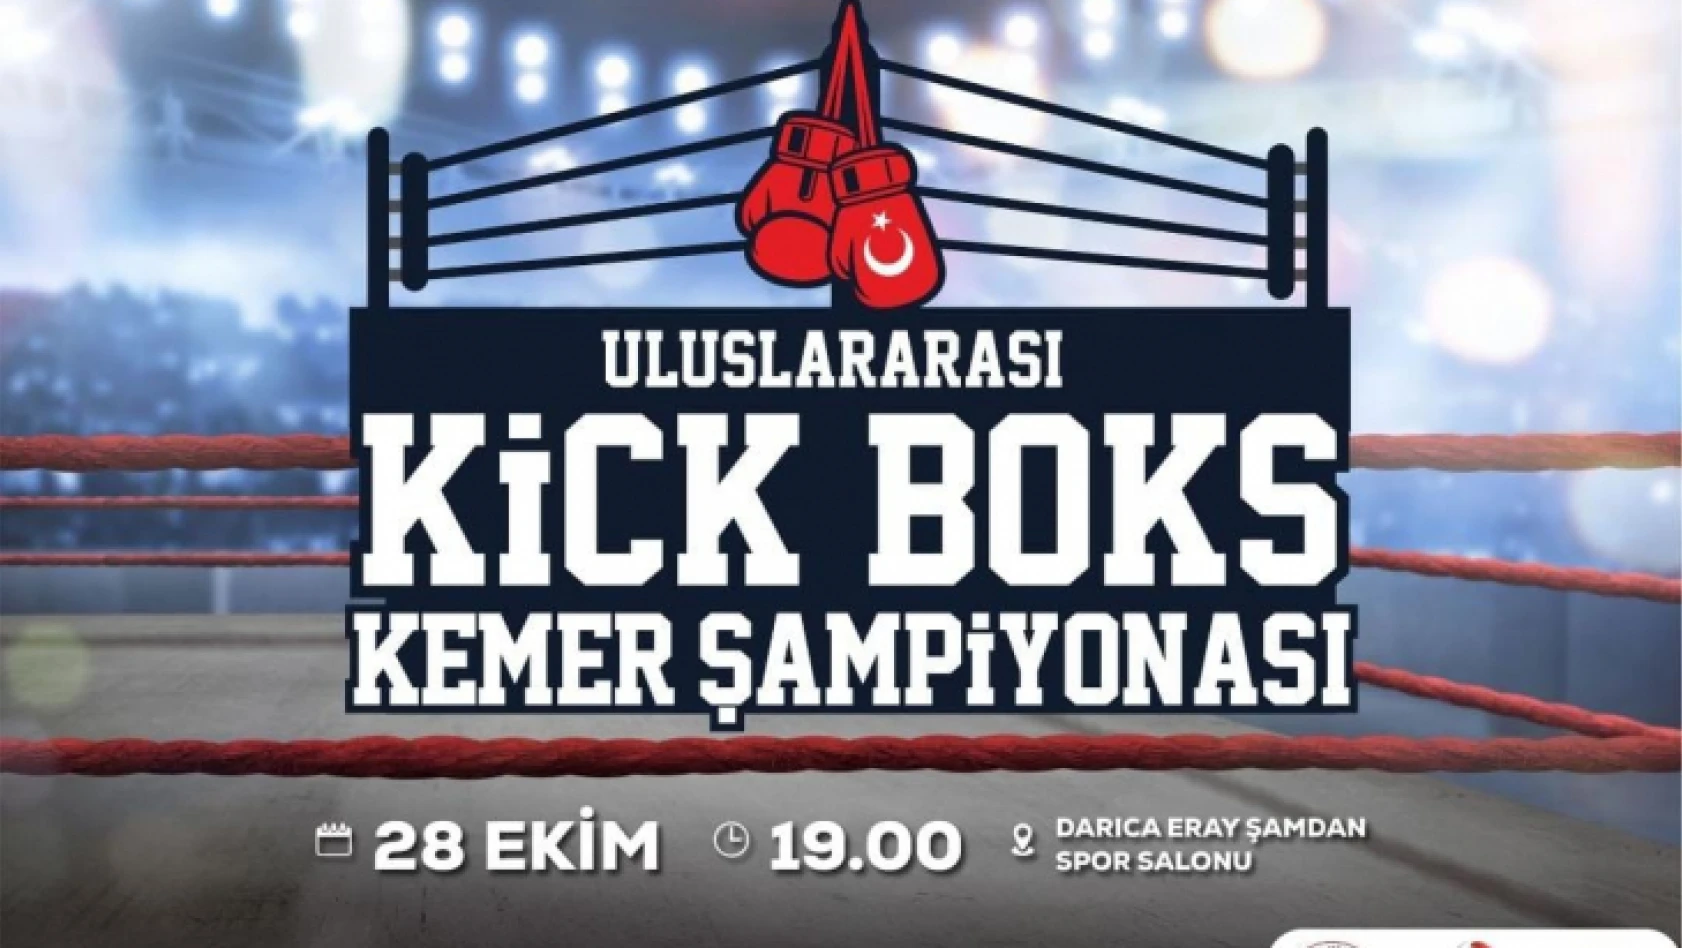 Uluslararası Kick Boks Kemer Şampiyonası Kocaeli'de başlıyor